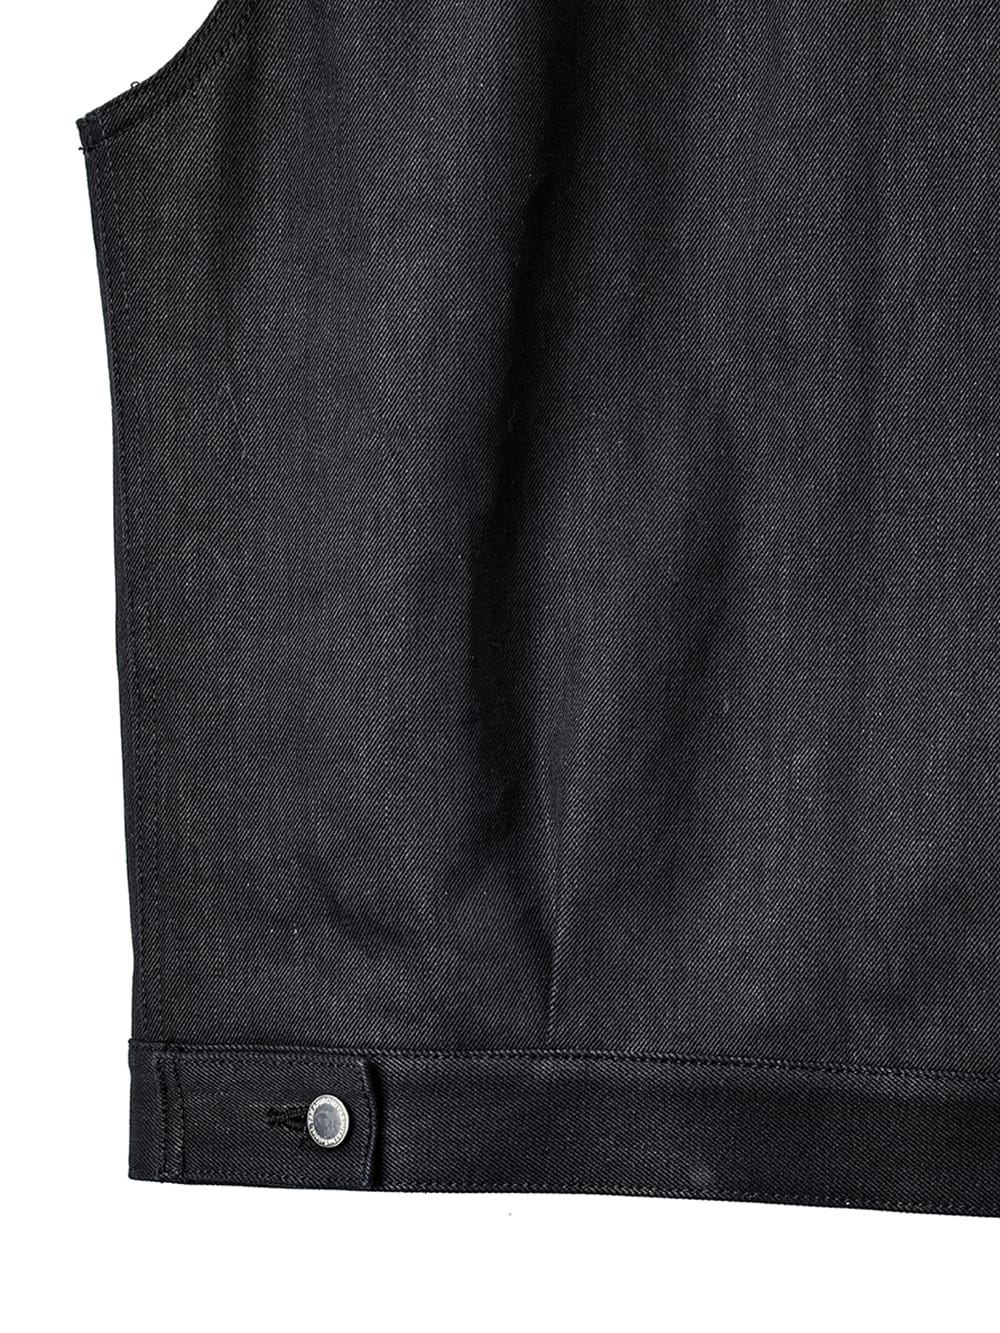 Light - left sleeveless jean jacket